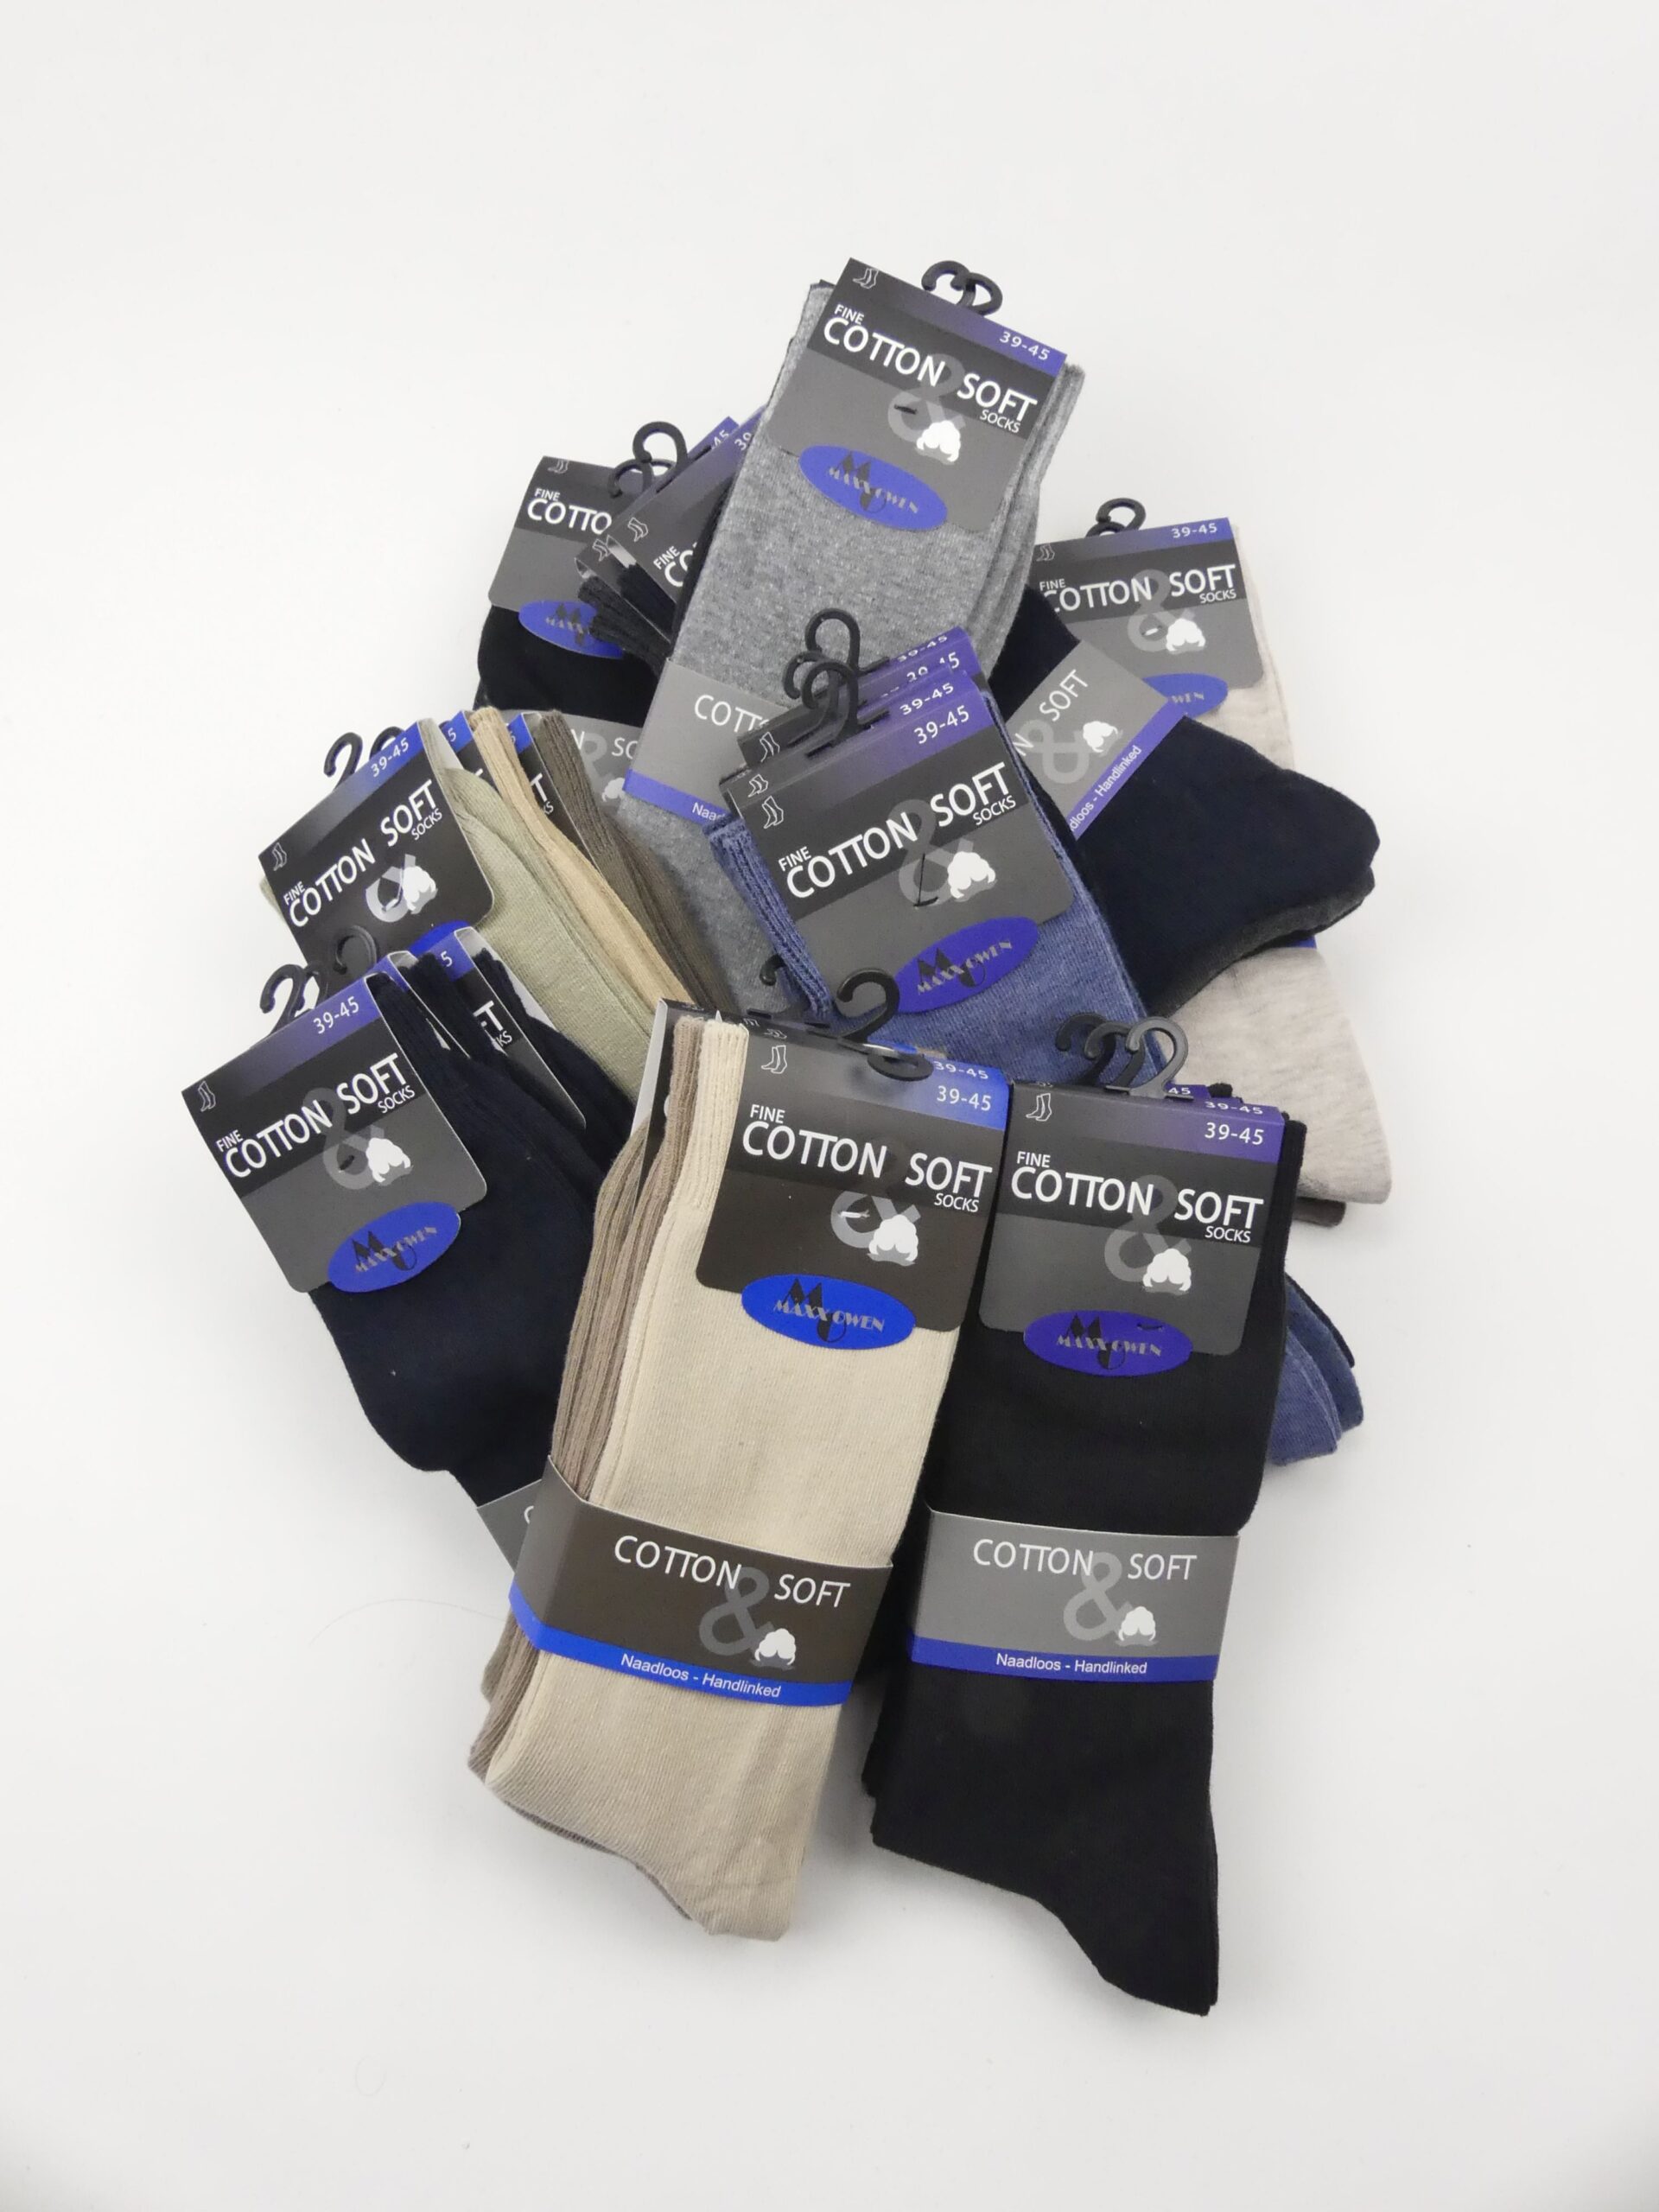 Transistor Knooppunt affix Naadloze sokken voor heren | Laagste prijs garantie | Smits Beenmode